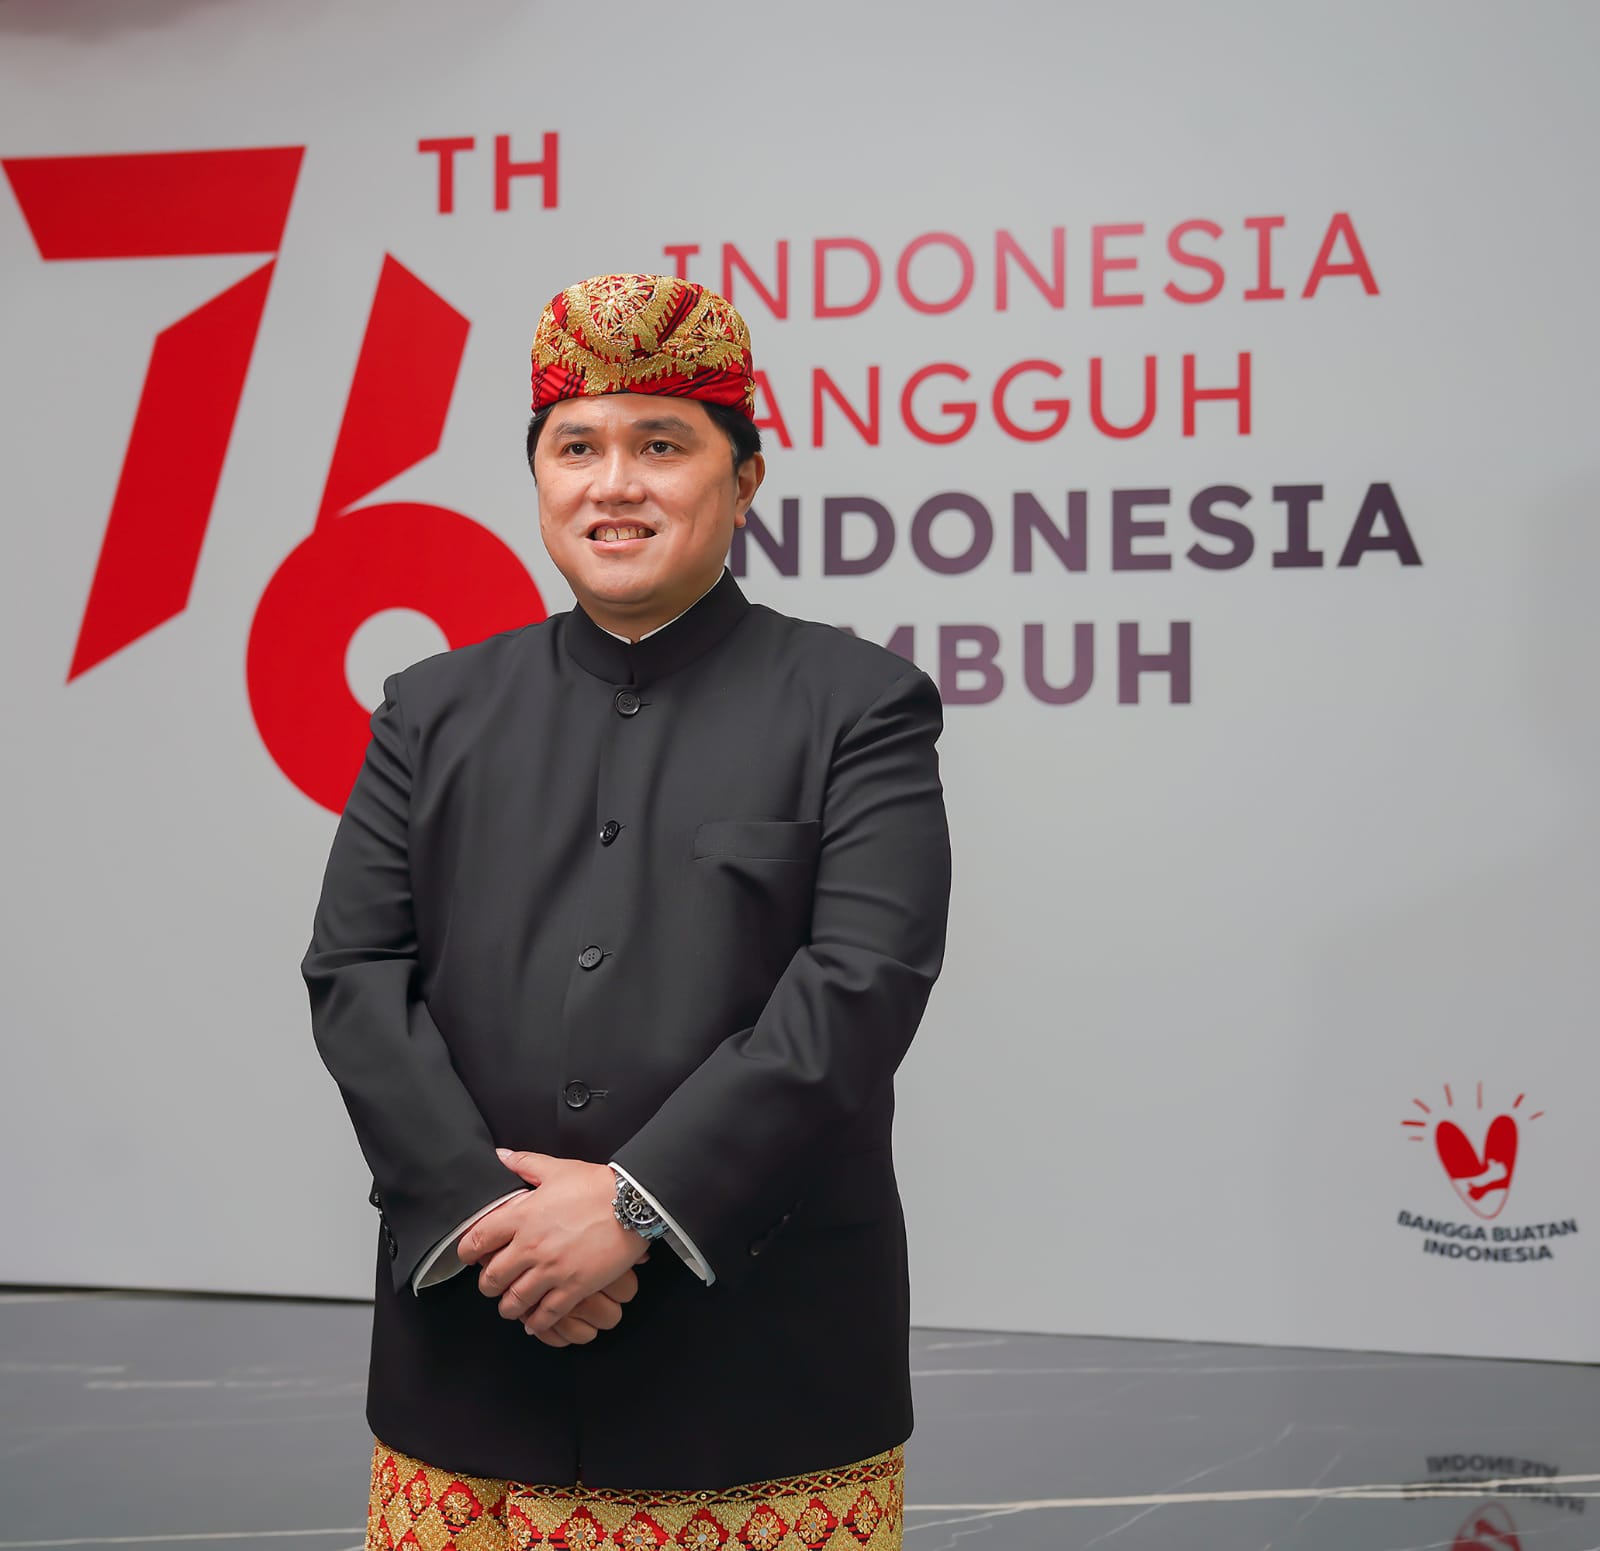 Selain Presiden, Menteri BUMN RI juga Berbusana Adat Lampung